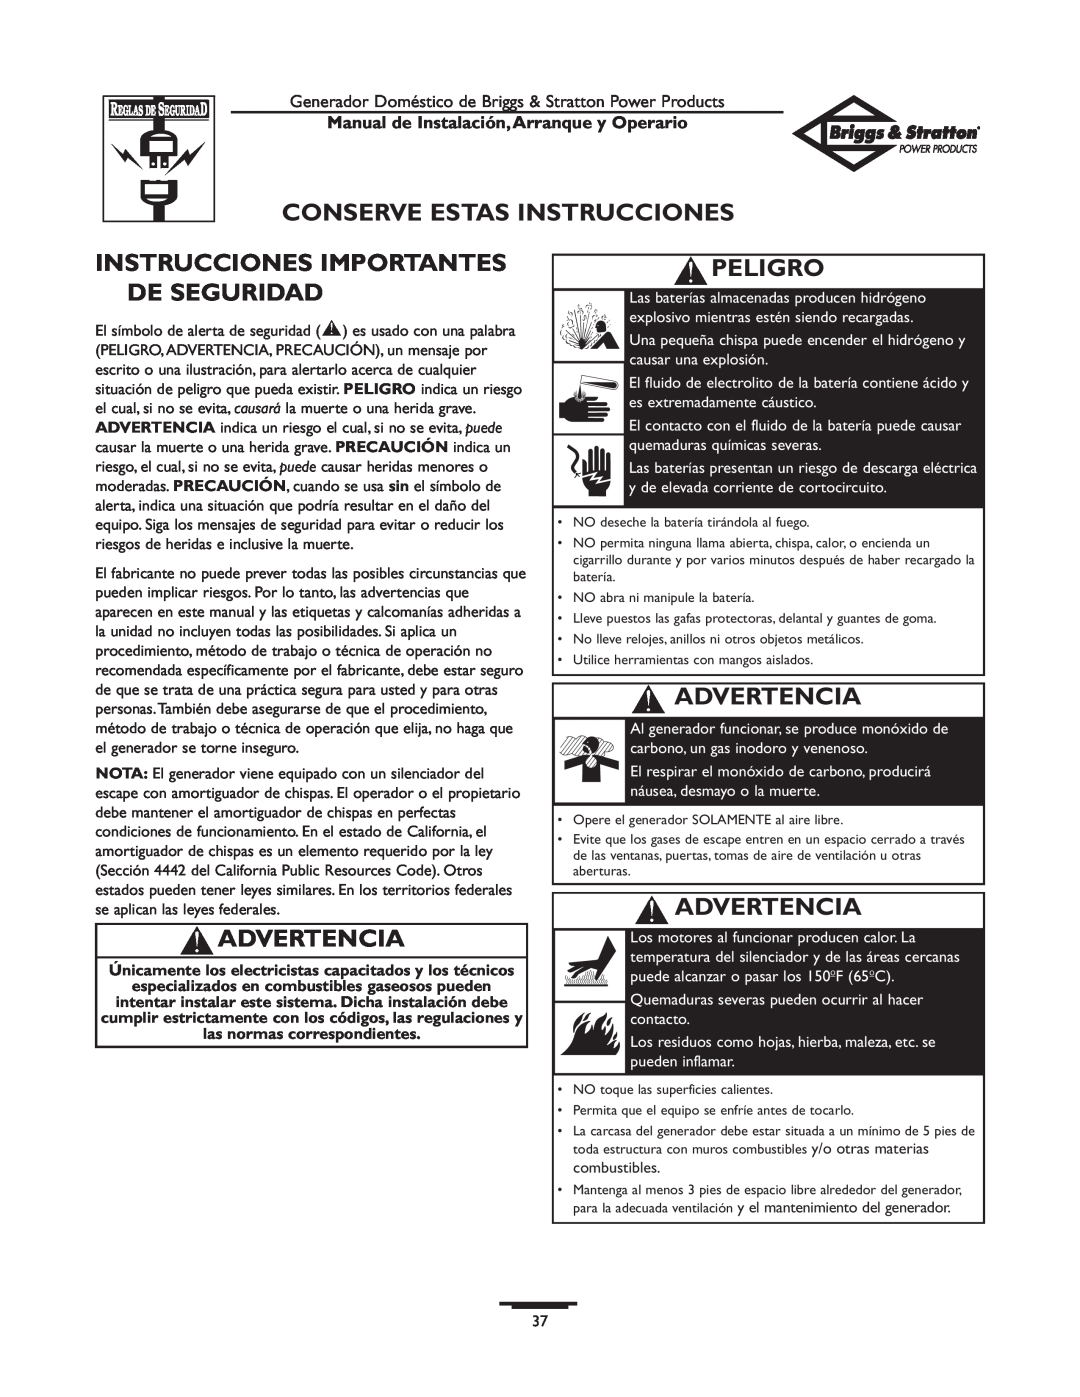 Briggs & Stratton 01897-0 manual Conserve Estas Instrucciones, Instrucciones Importantes De Seguridad, Advertencia, Peligro 